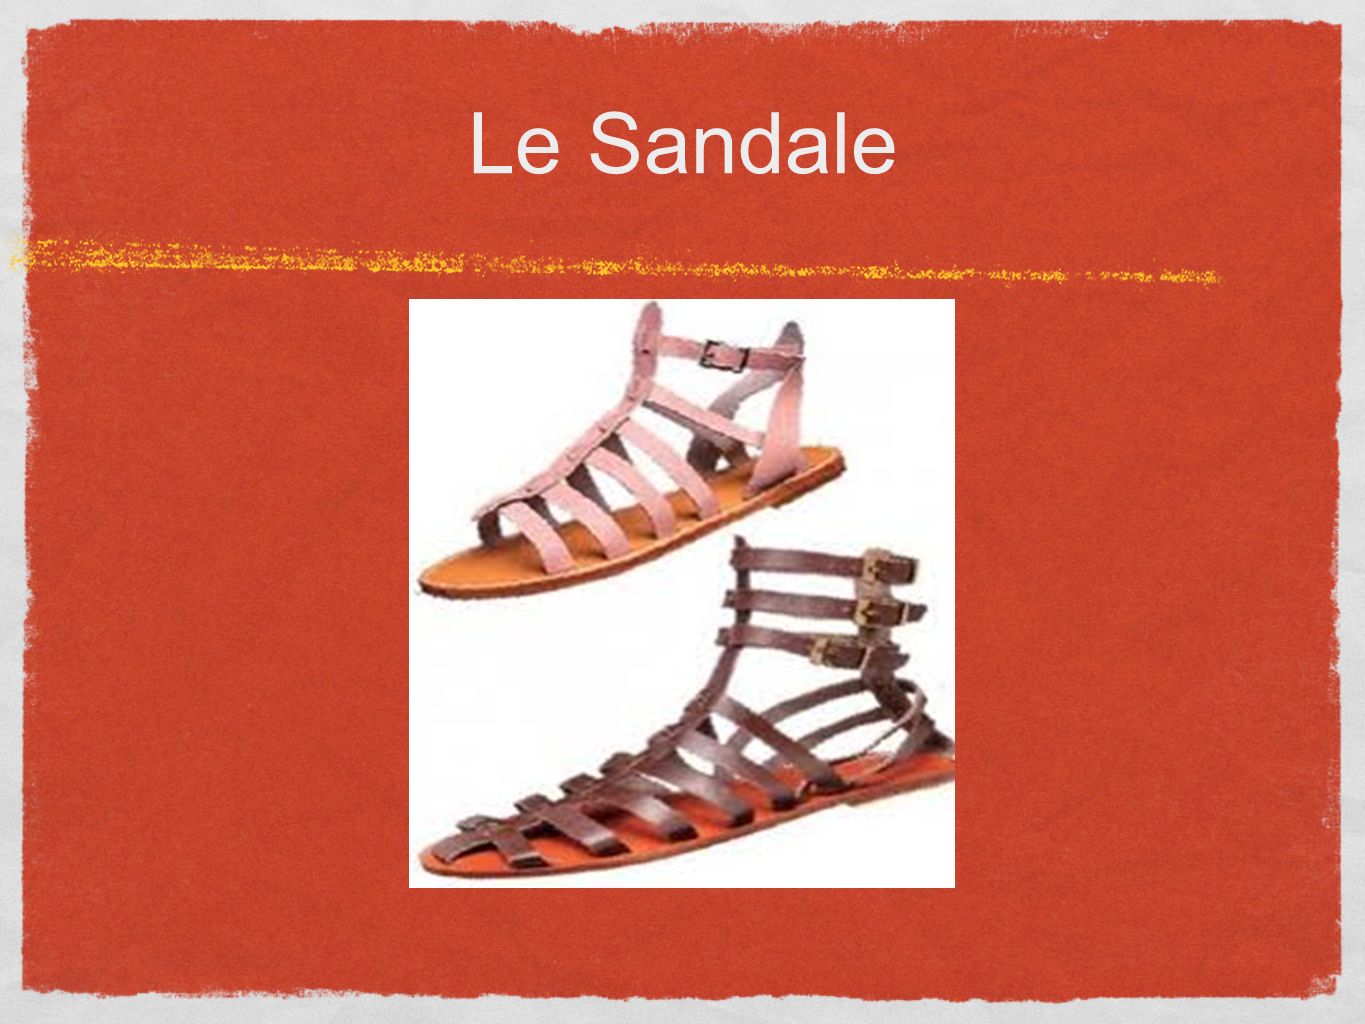 Le Sandale